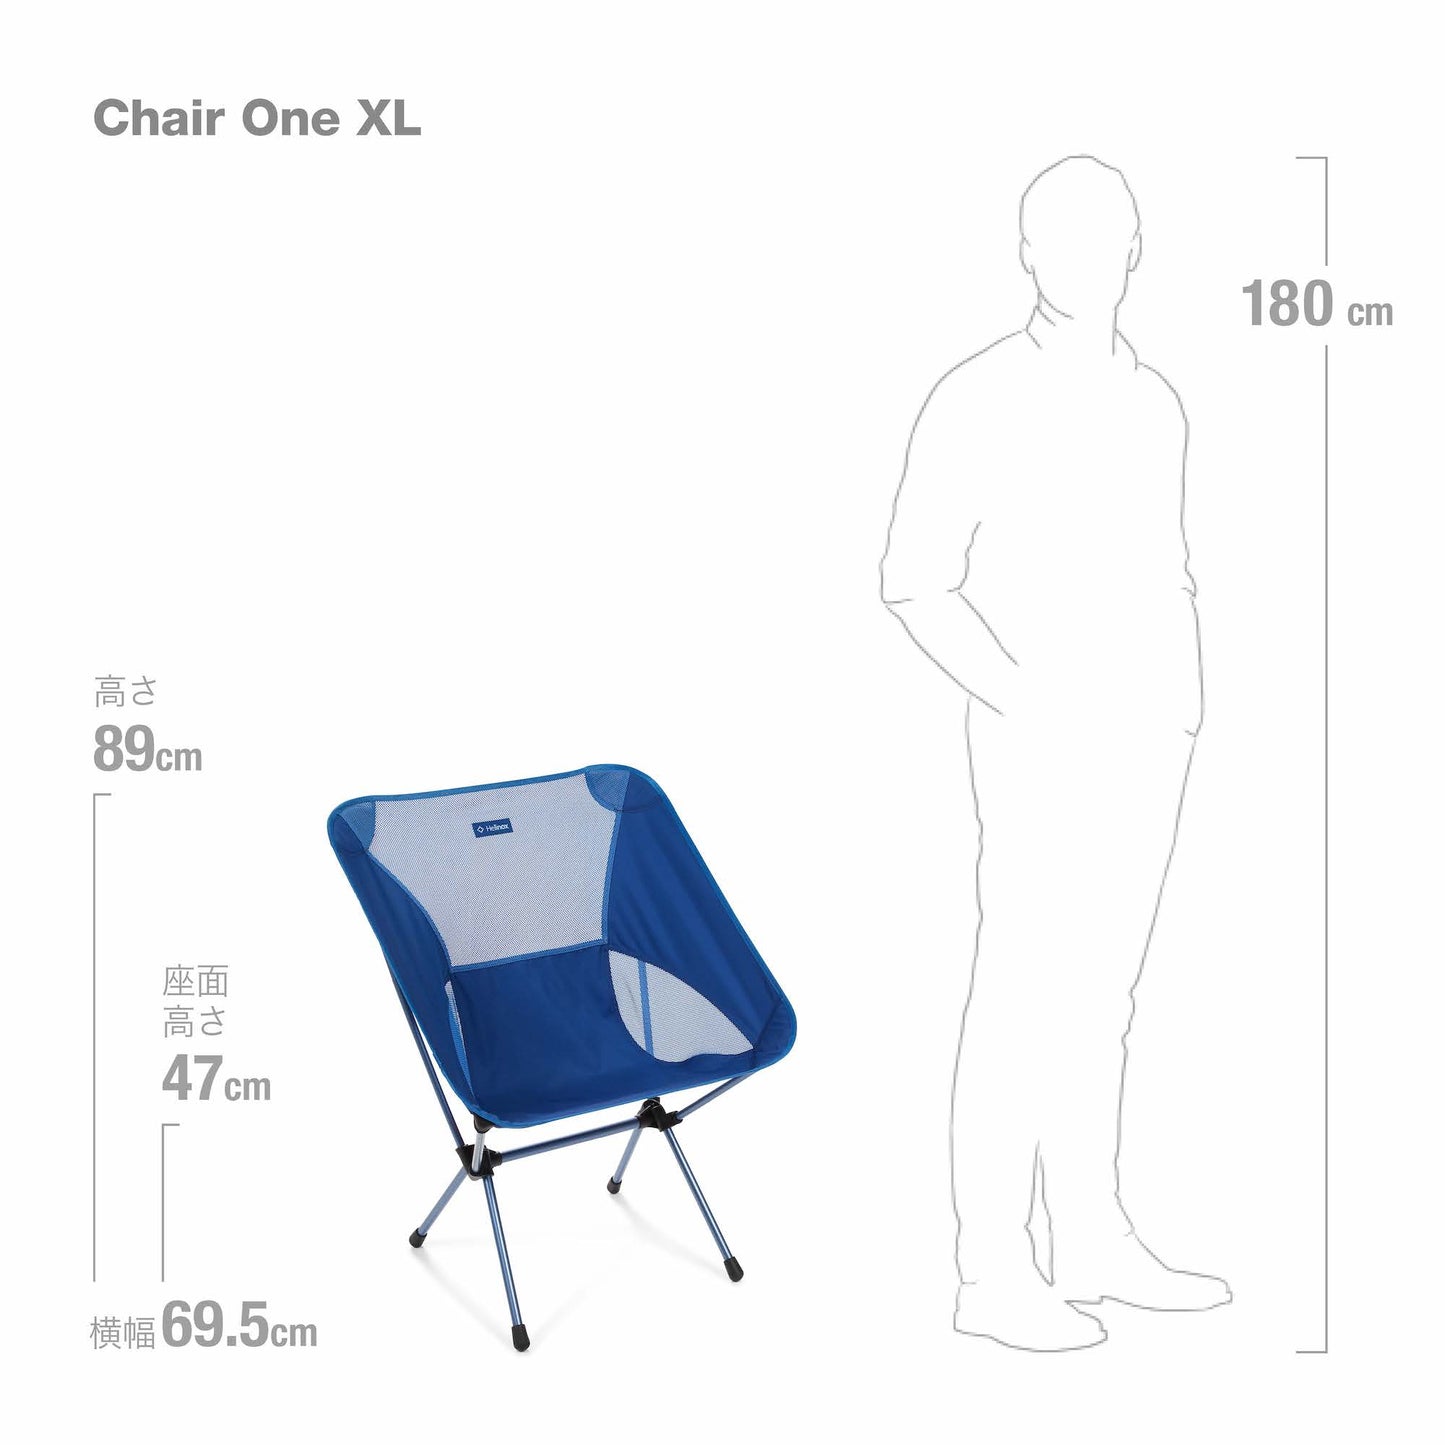 Chair One XL - Blue Block